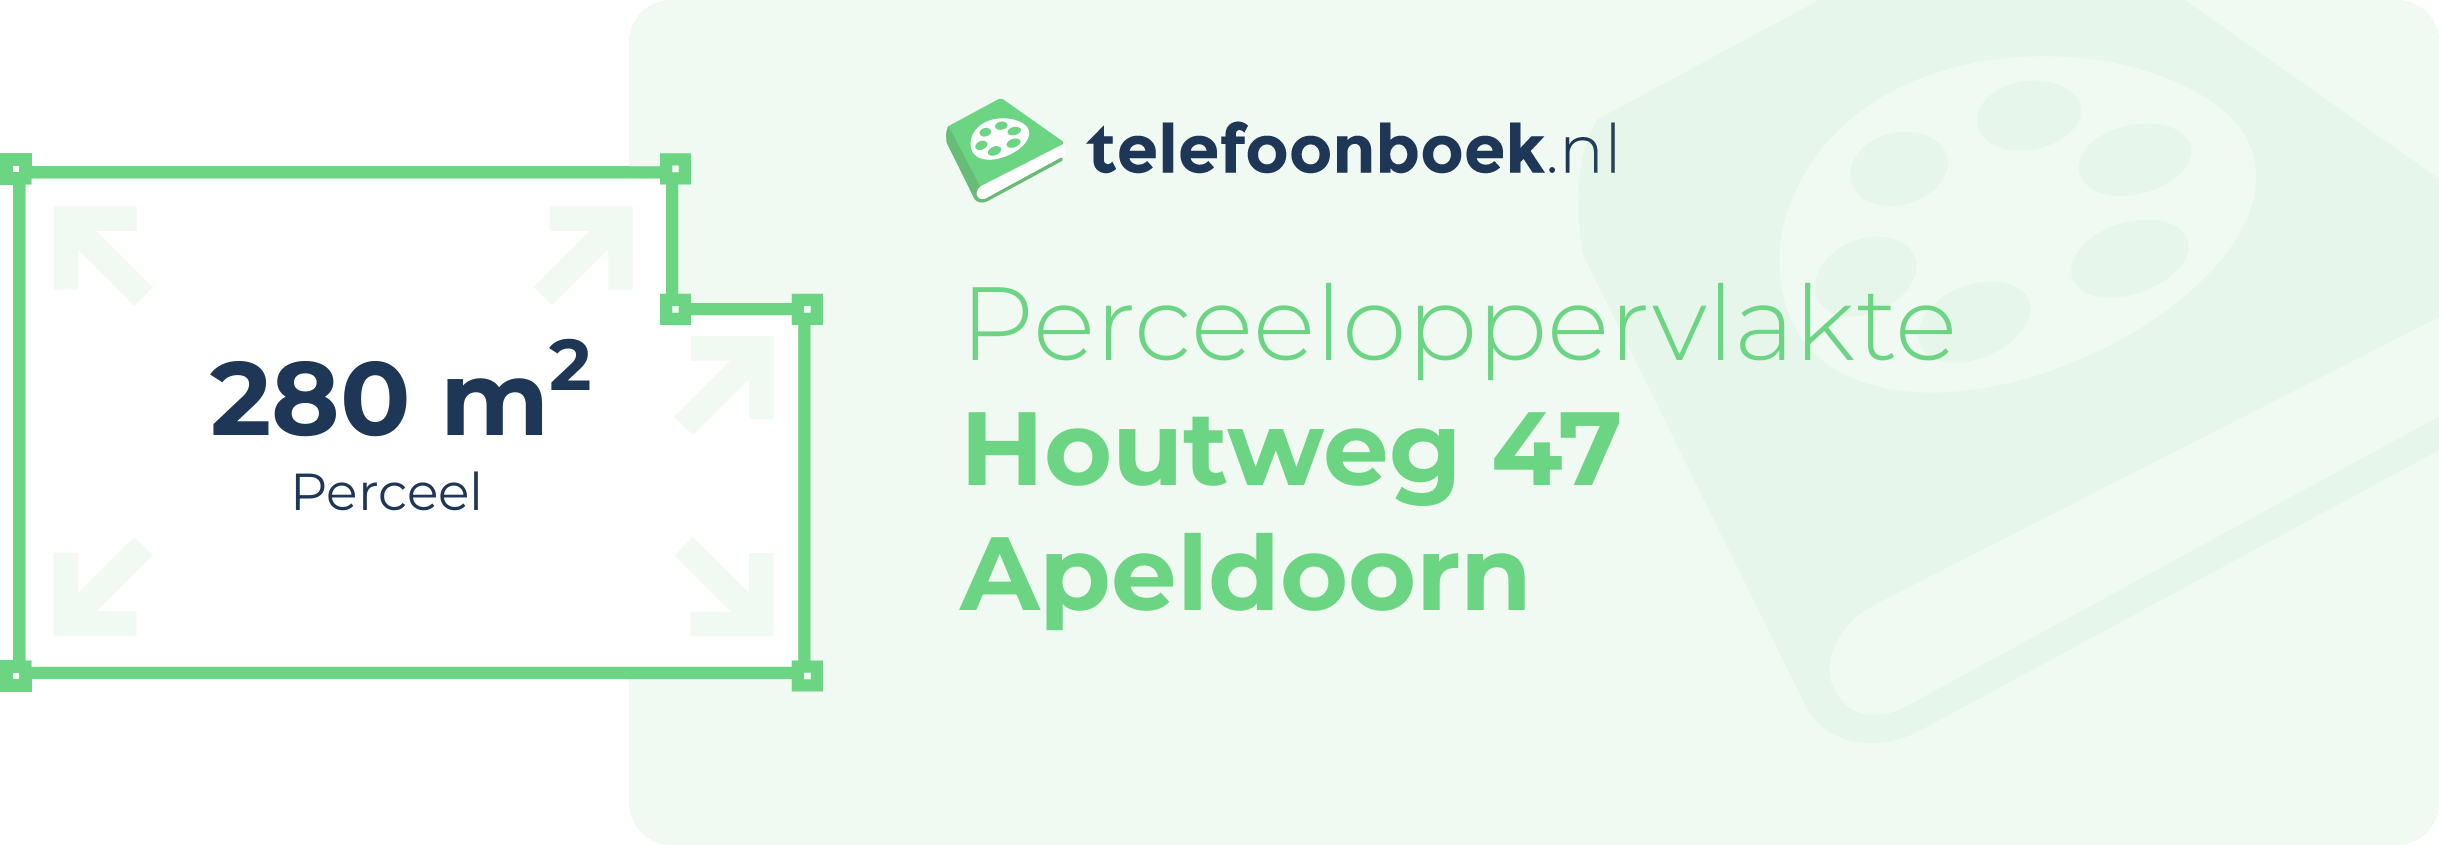 Perceeloppervlakte Houtweg 47 Apeldoorn